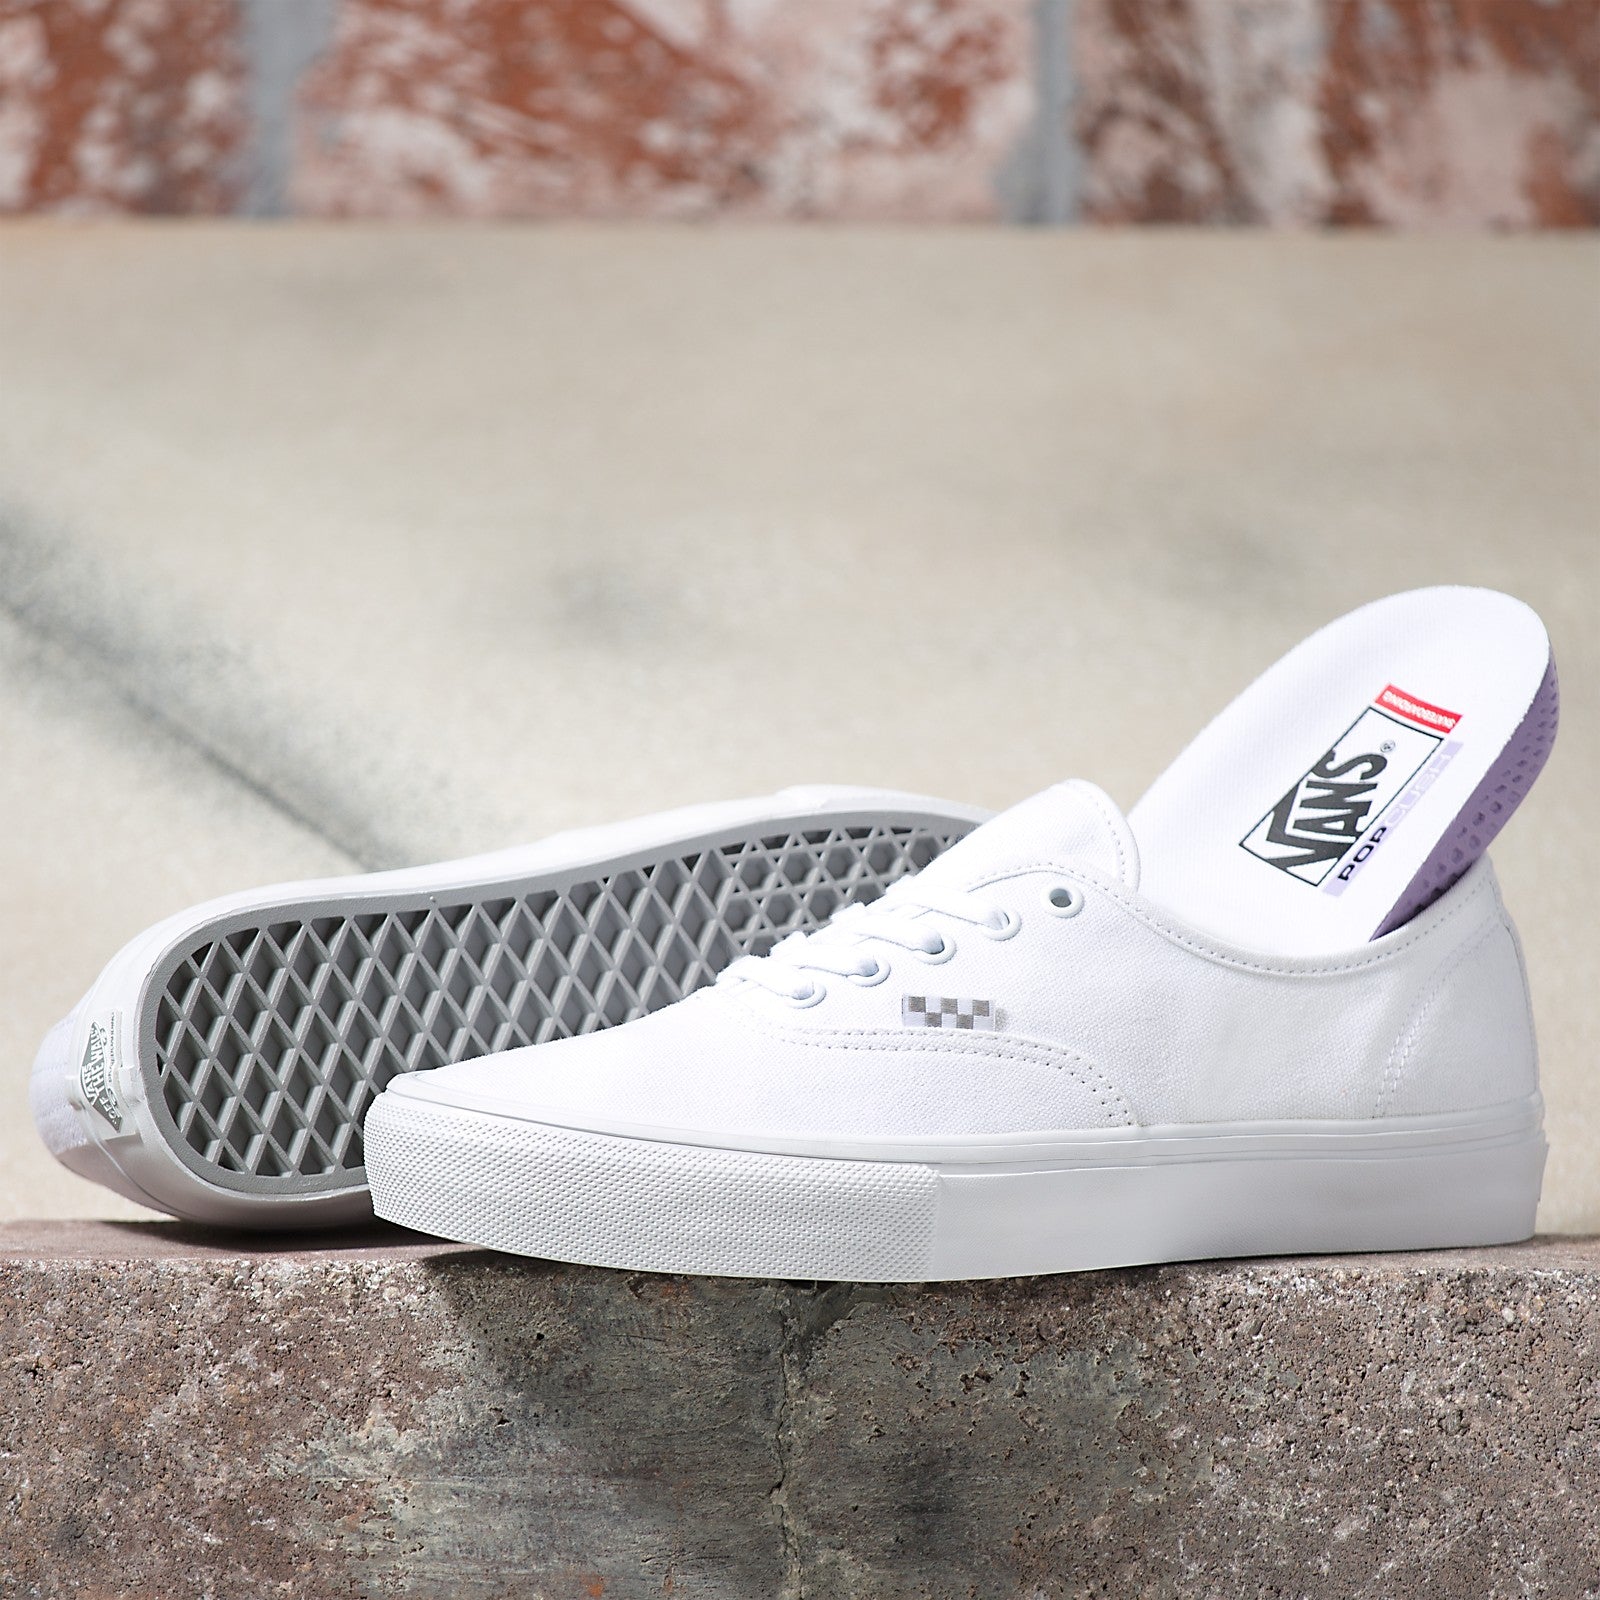 Vans Authentic Pro Skateboard Shoe - Port/Gum